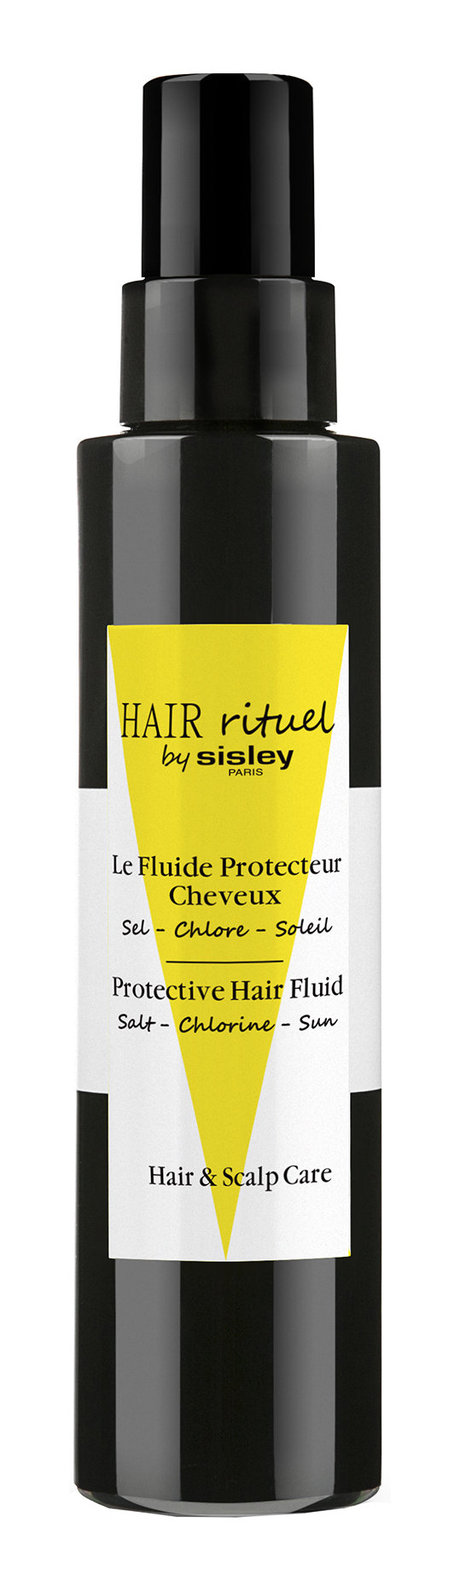 hair rituel by sisley hair protective fluid